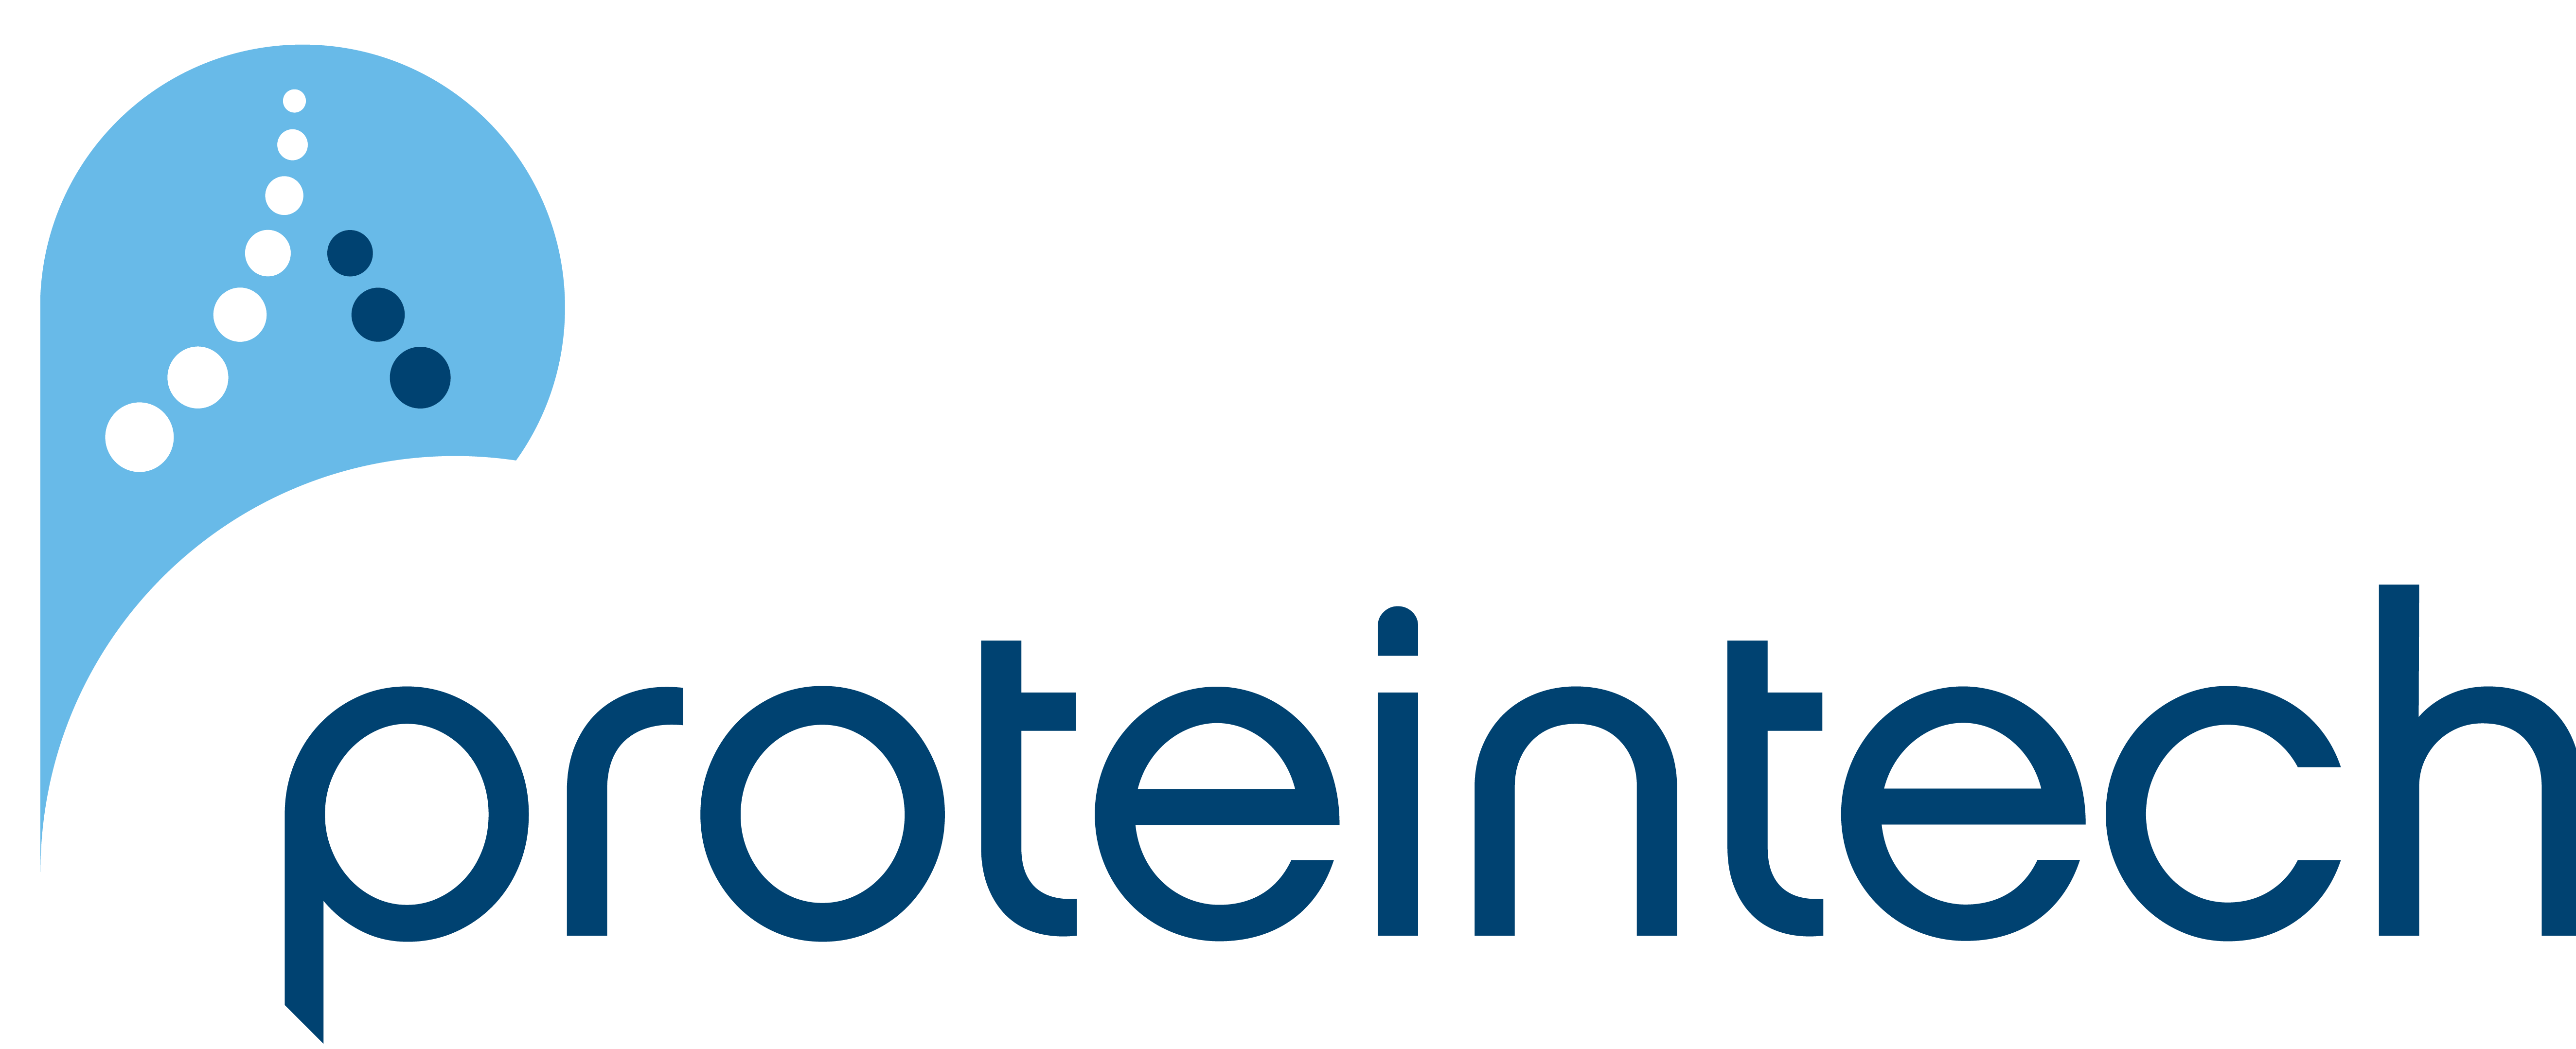 ProteinTech logo